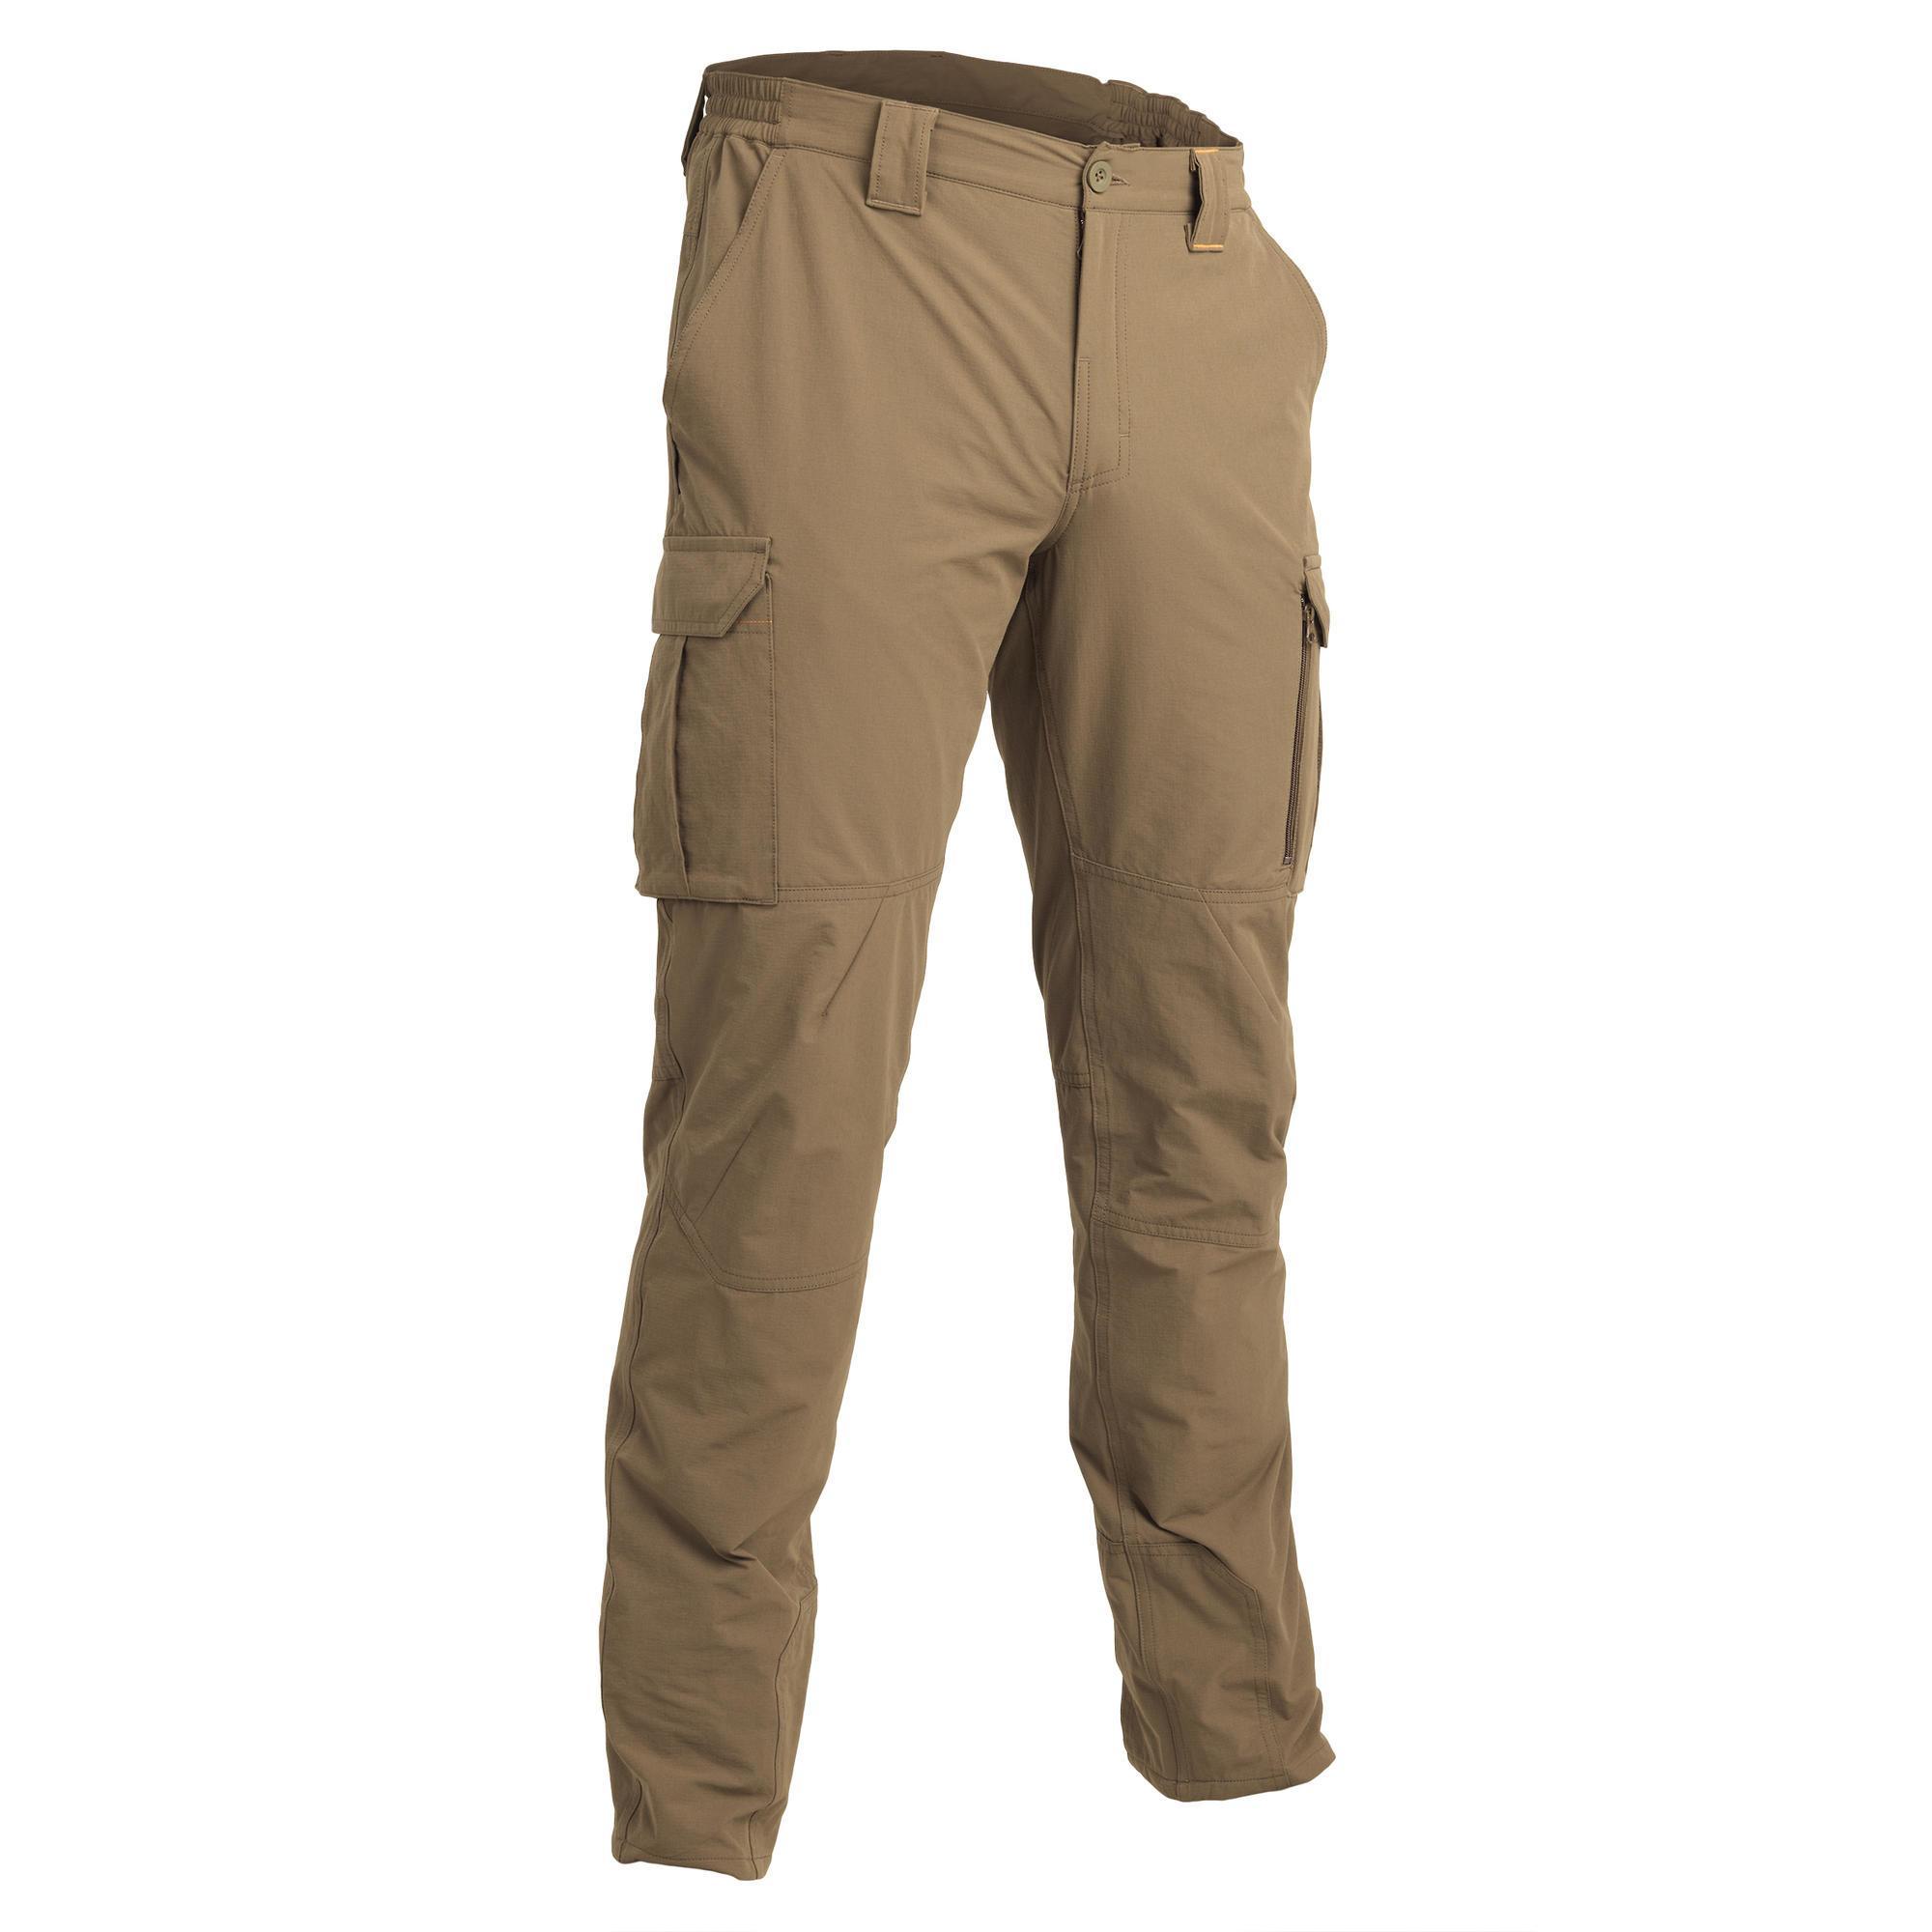 Pantalon 500 Ușor și respirant Bej bărbați La Oferta Online decathlon imagine La Oferta Online